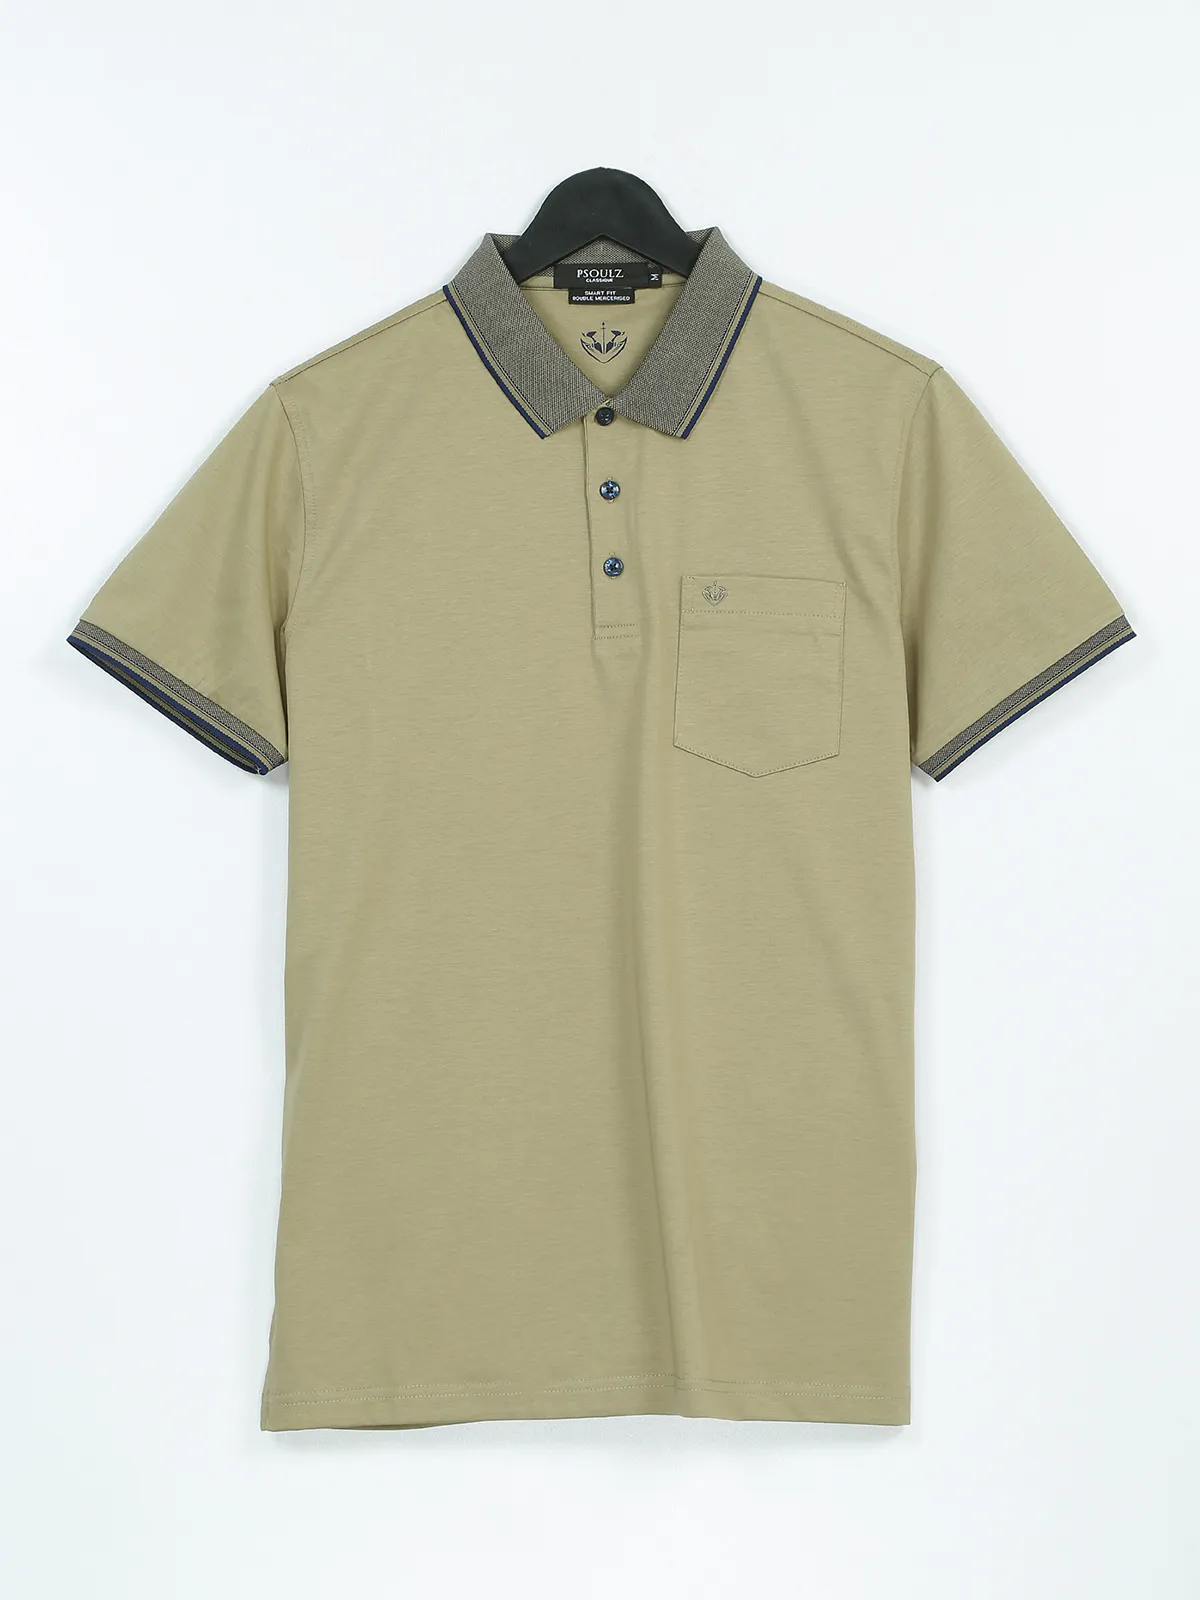 PSOULZ olive cotton plain t shirt